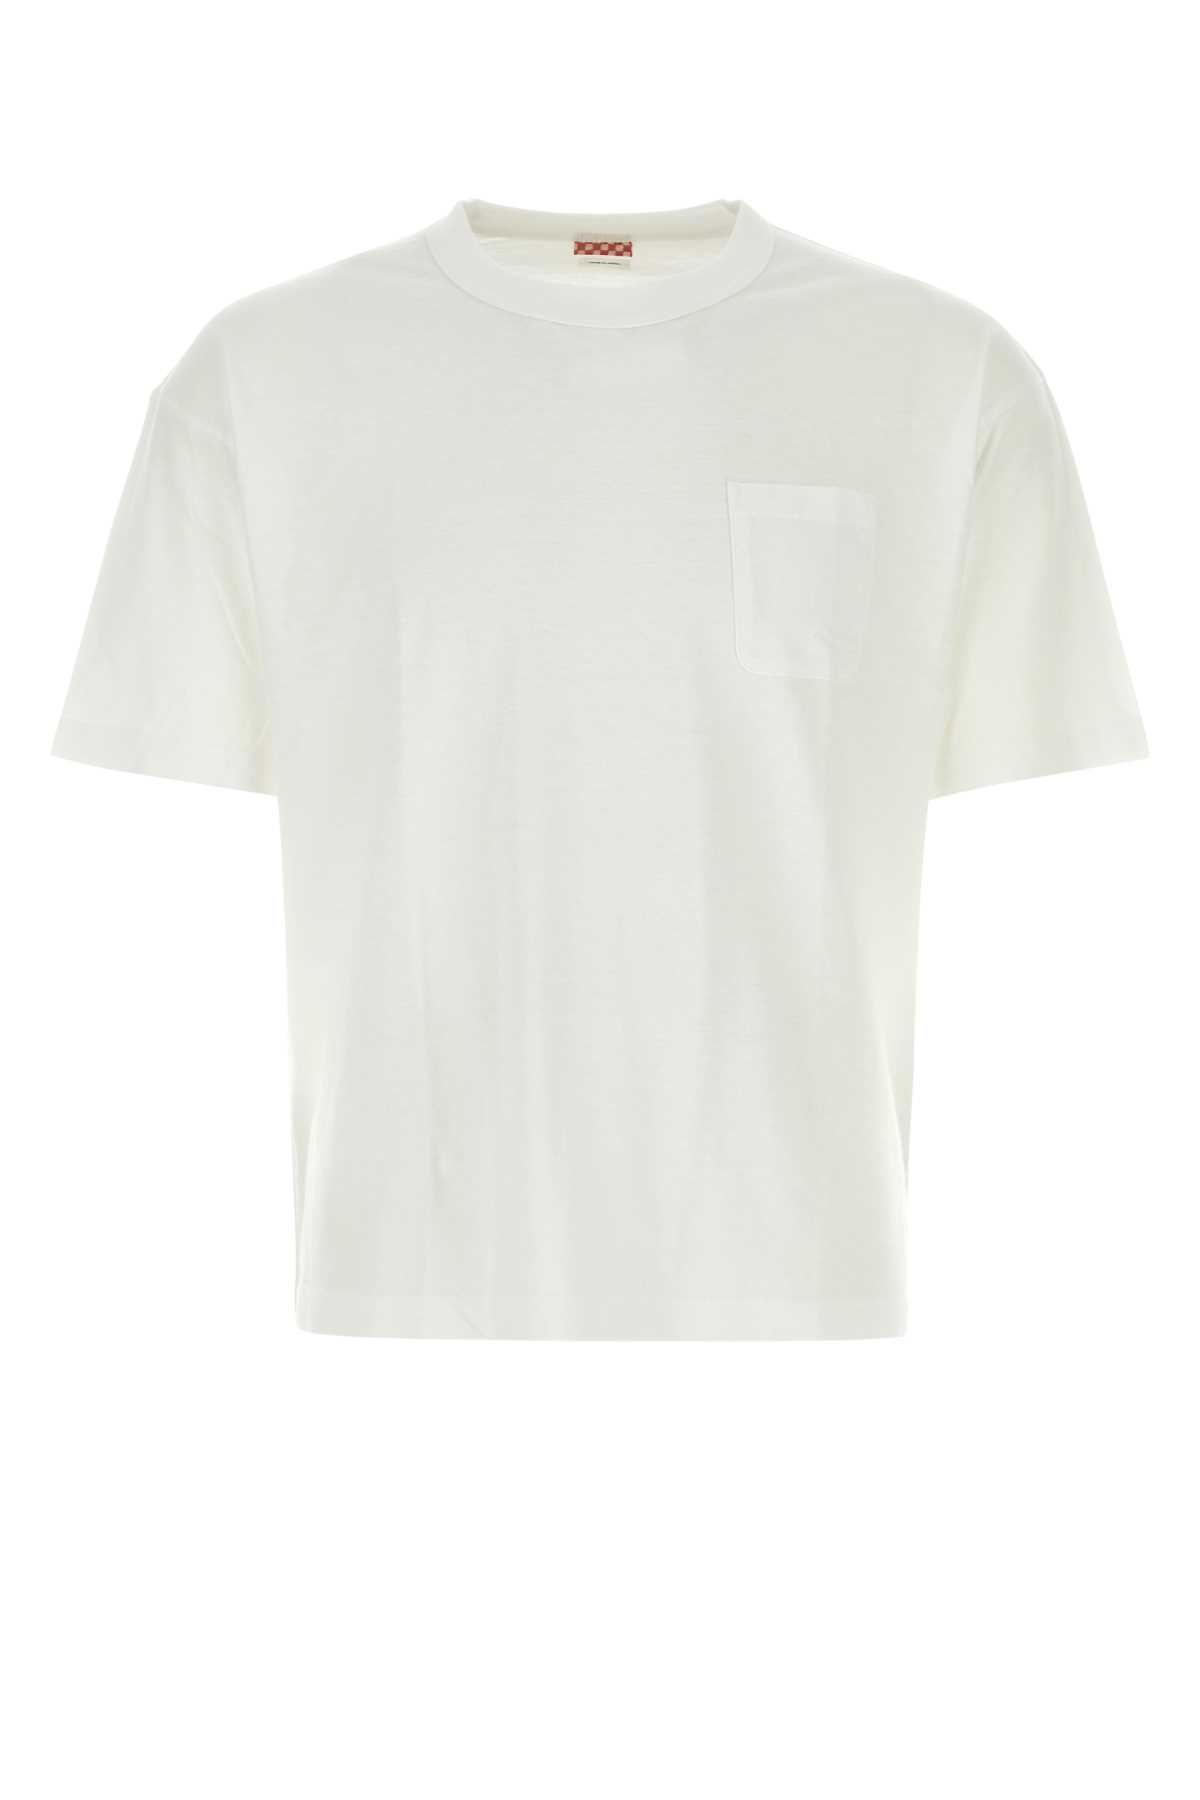 White Cotton Blend T-shirt Set